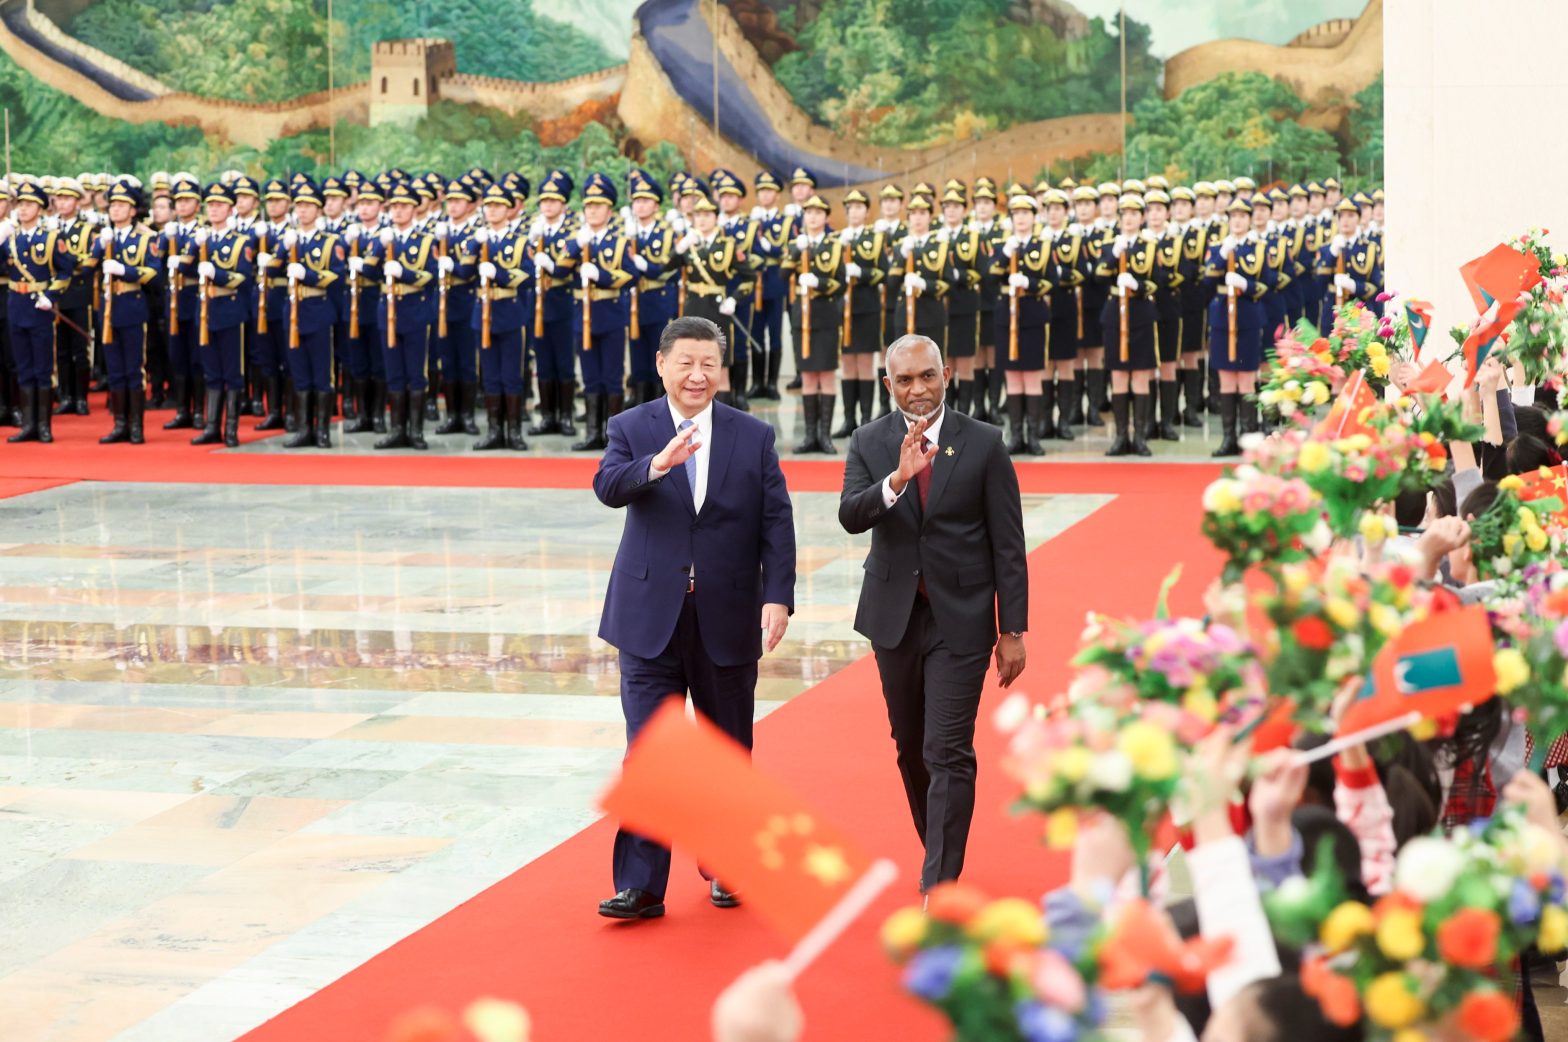 चीन के हाथों की 'कठपुतली' बन नाच रहे मालदीव के नए PM मुइज्जू, भारत से विवाद के बीच मालदीव निभा रहा चीन से याराना